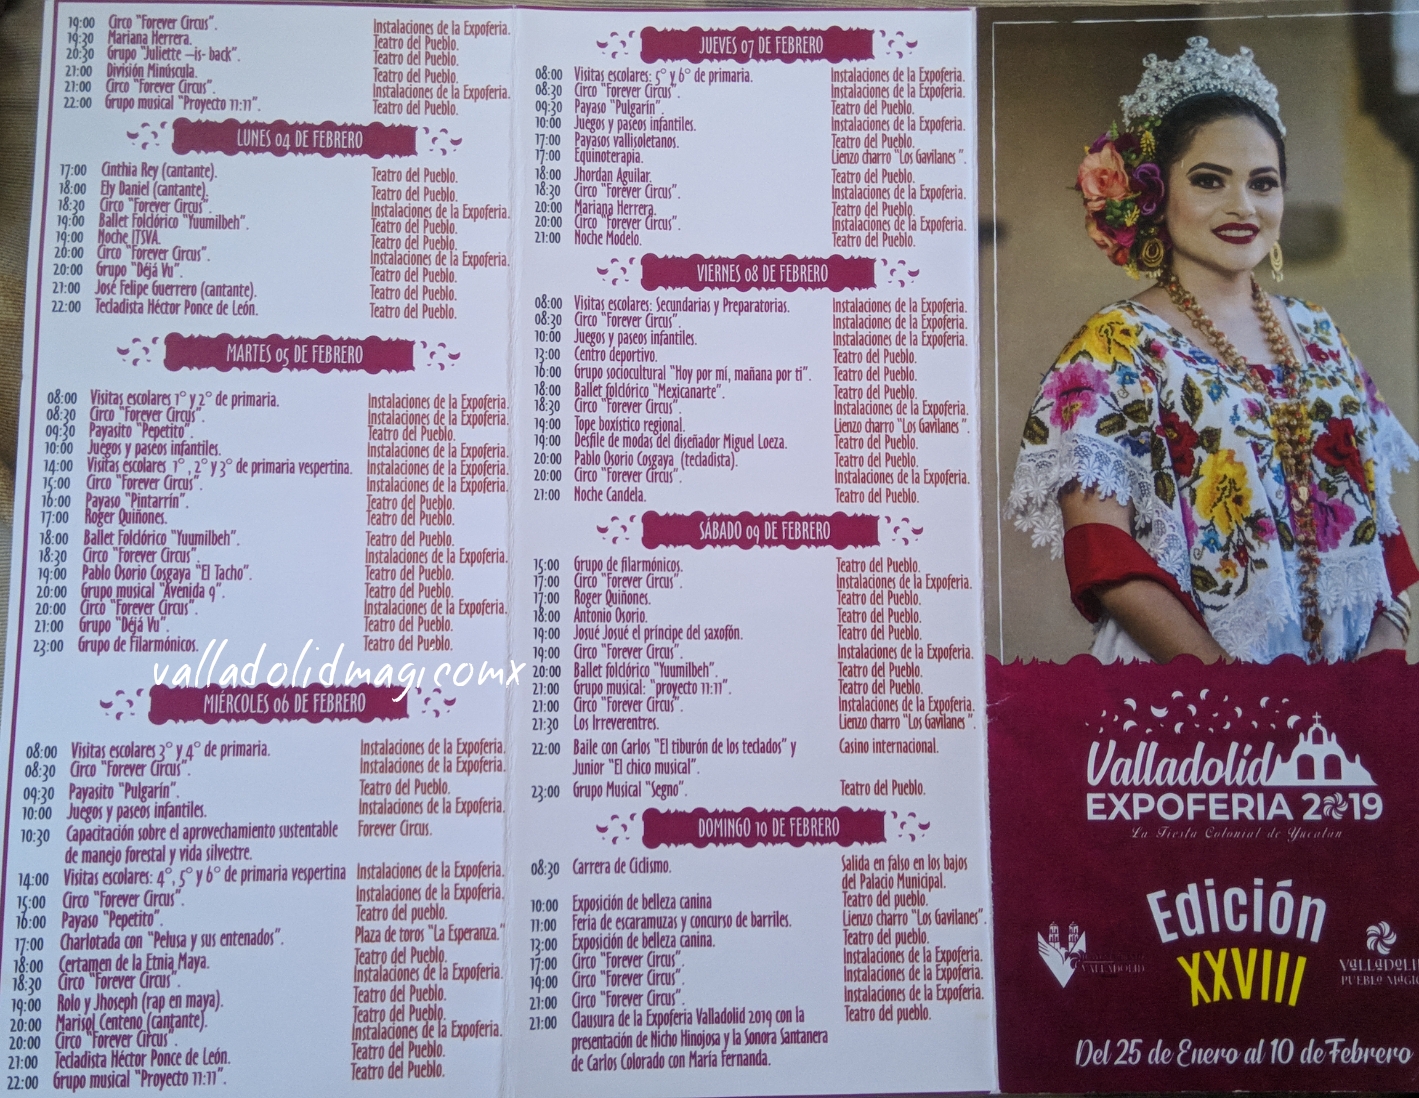 Programa de la Expoferia Valladolid 2019